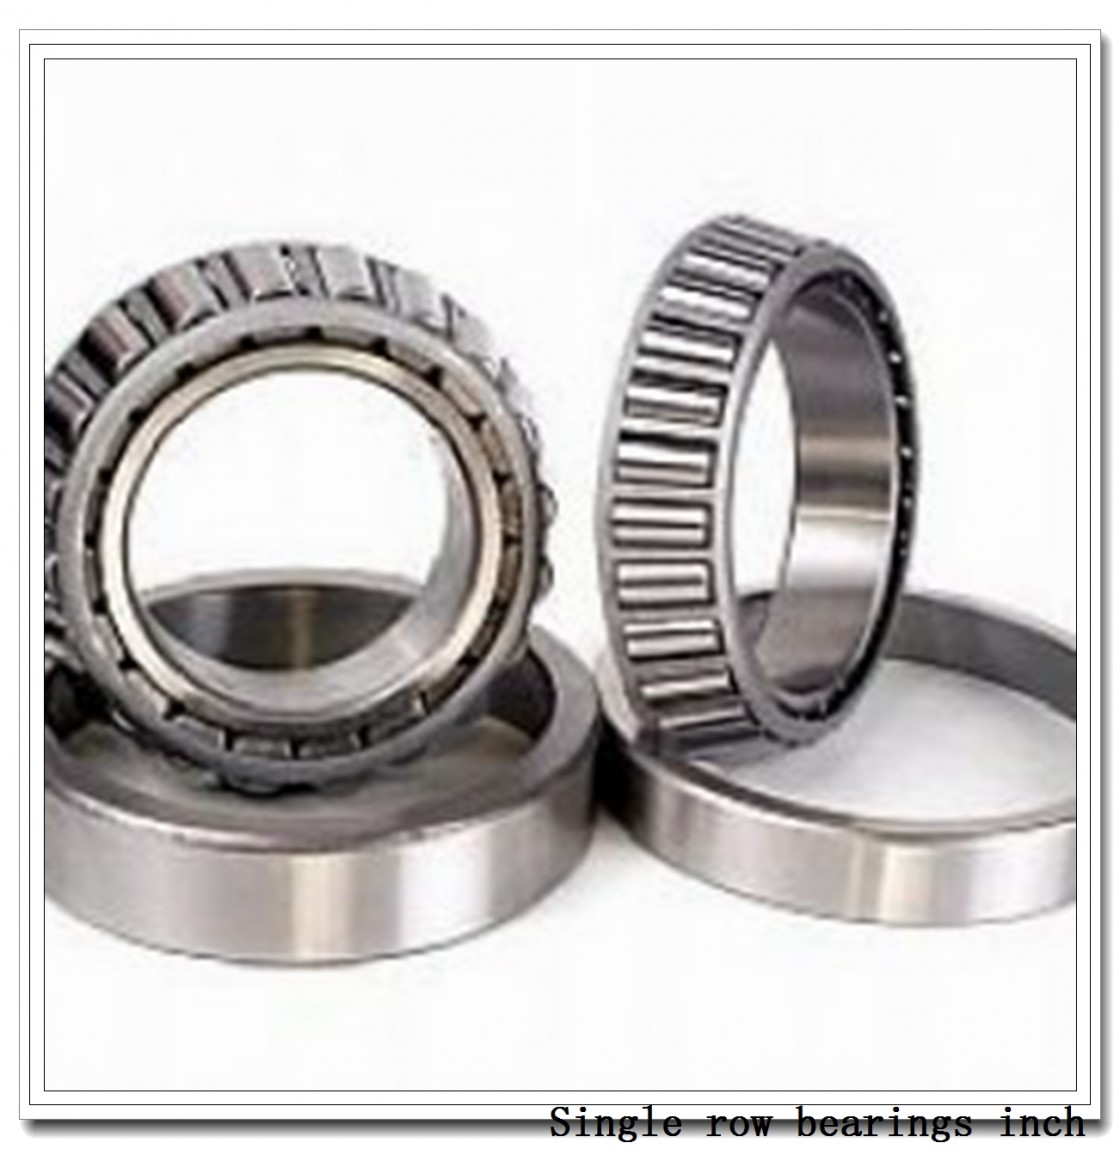 32964 Single row bearings inch